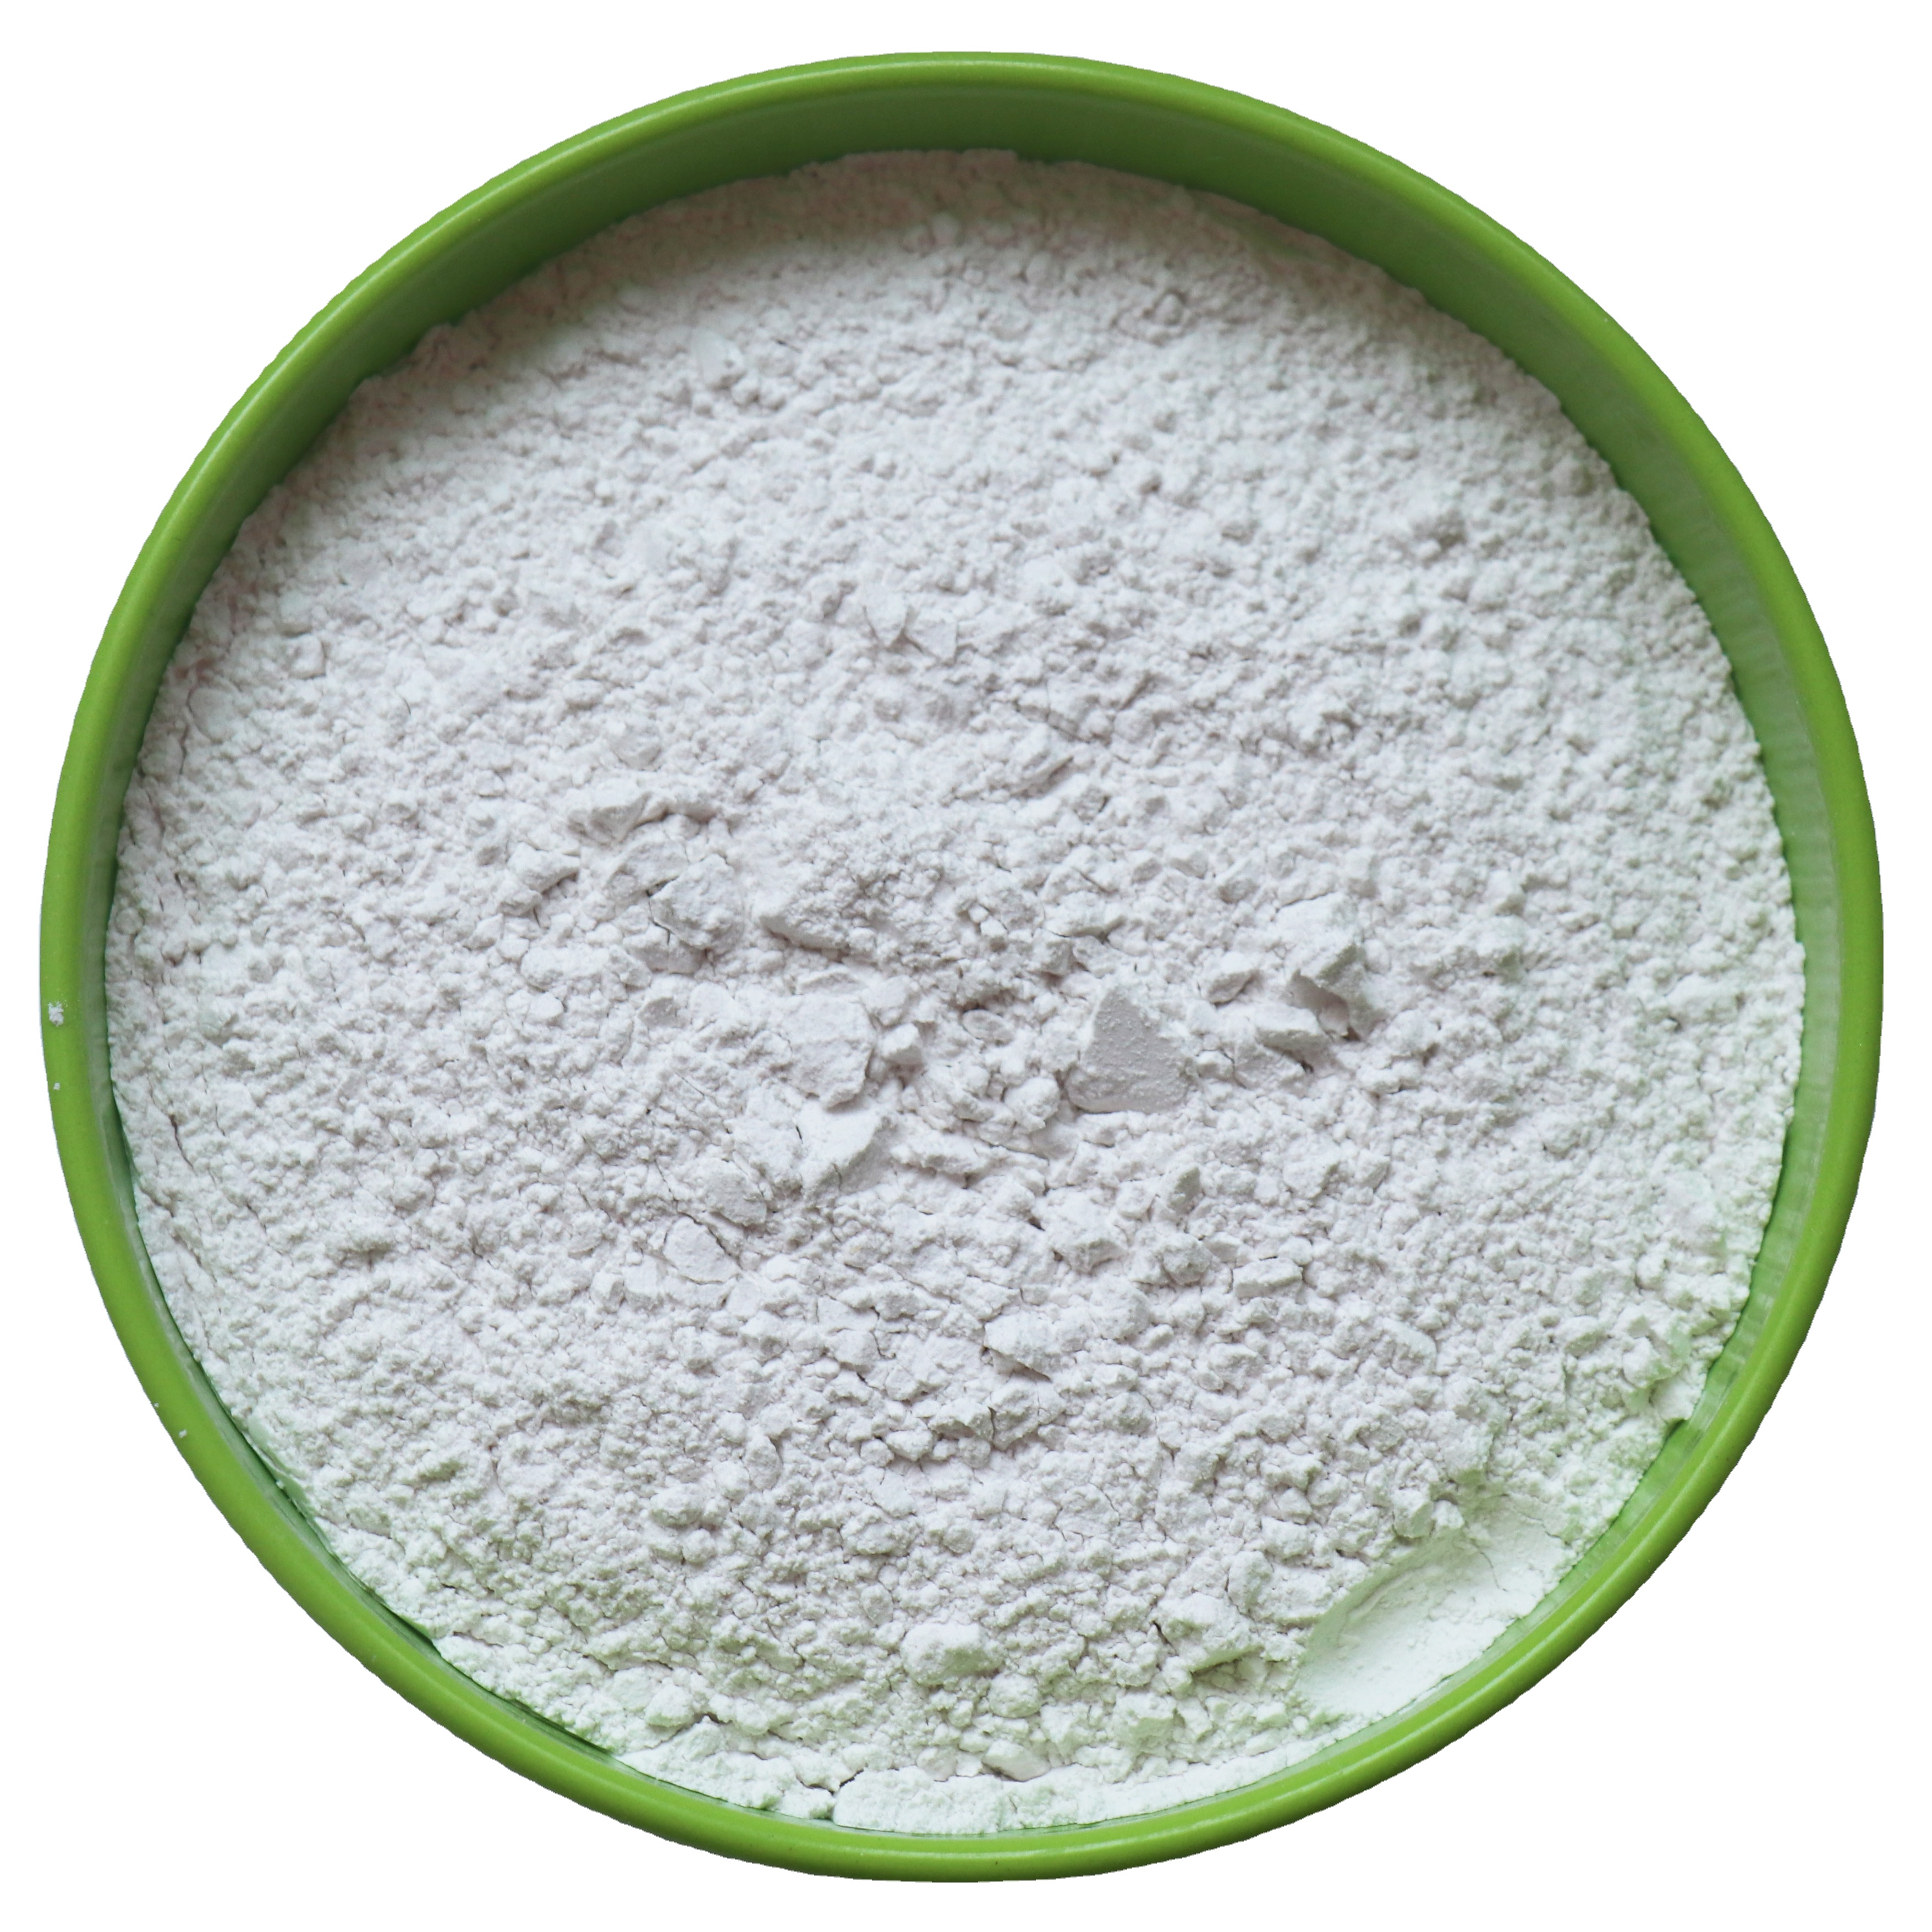 Direct selling price of precipitated barium sulfate Baso4 barite ore powder